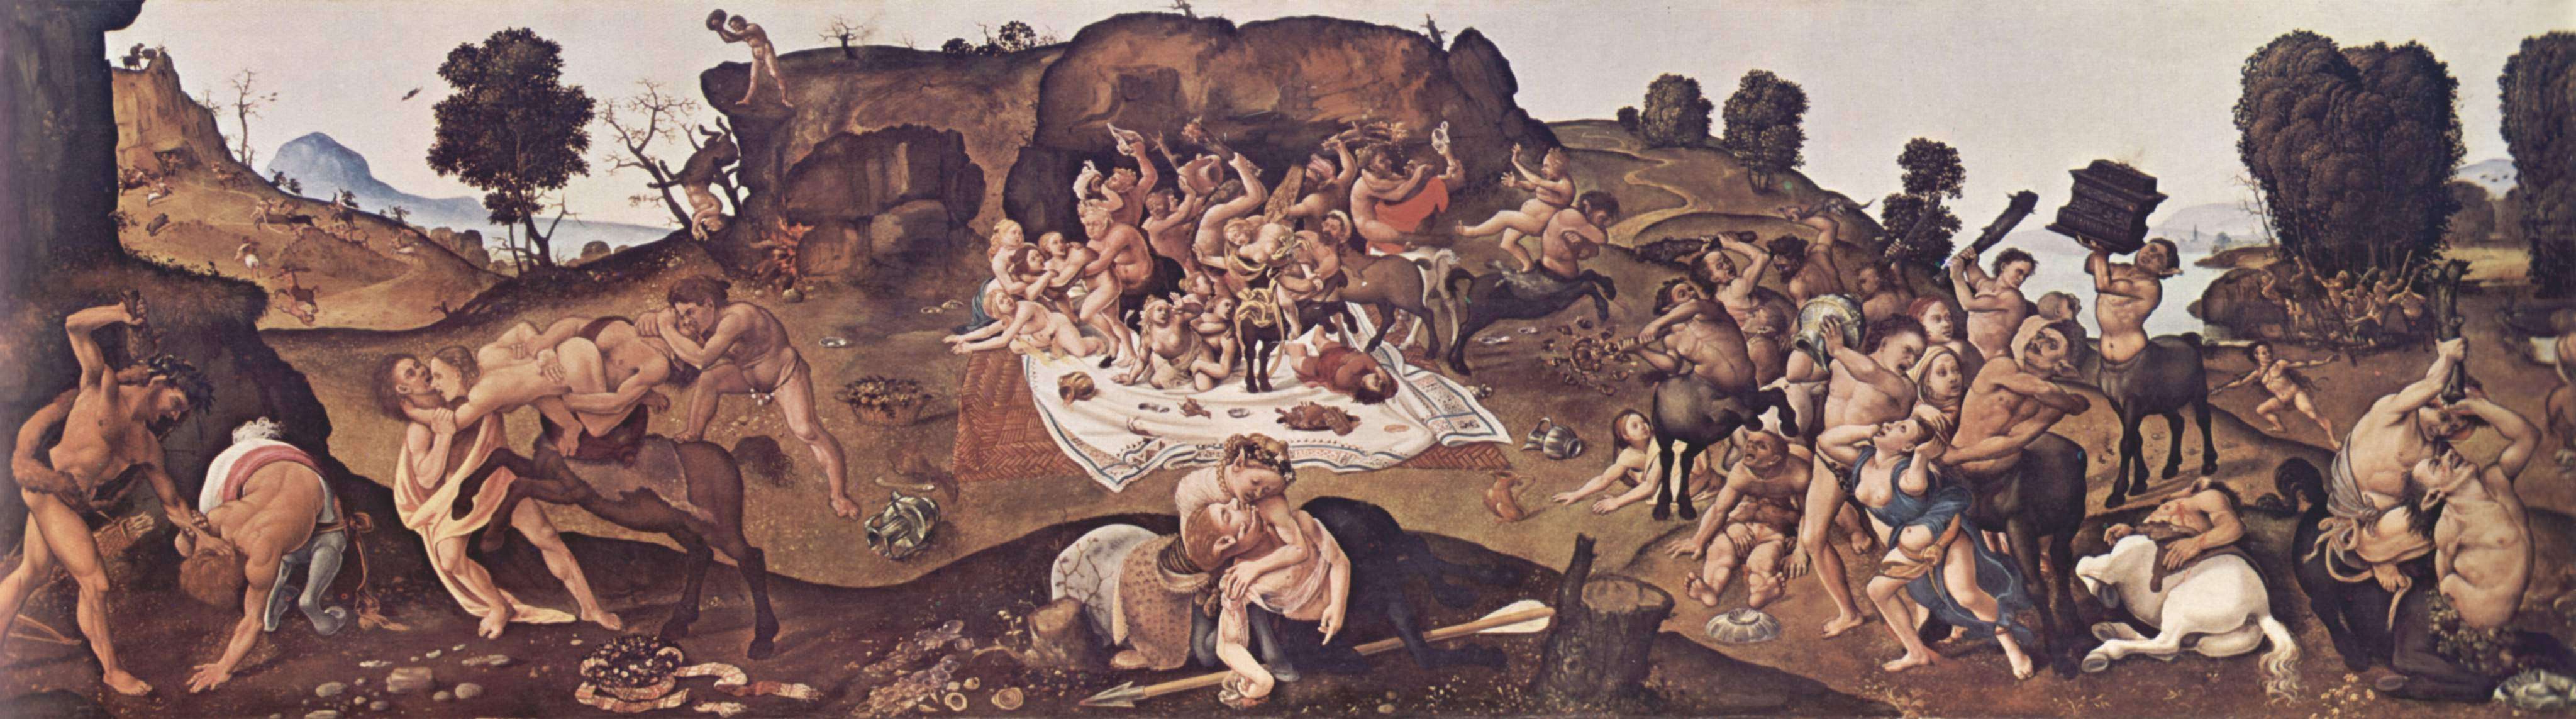 Η μάχη των Λαπιθών και Κενταύρων σε πίνακα του Πιέρο ντι Κόζιμο